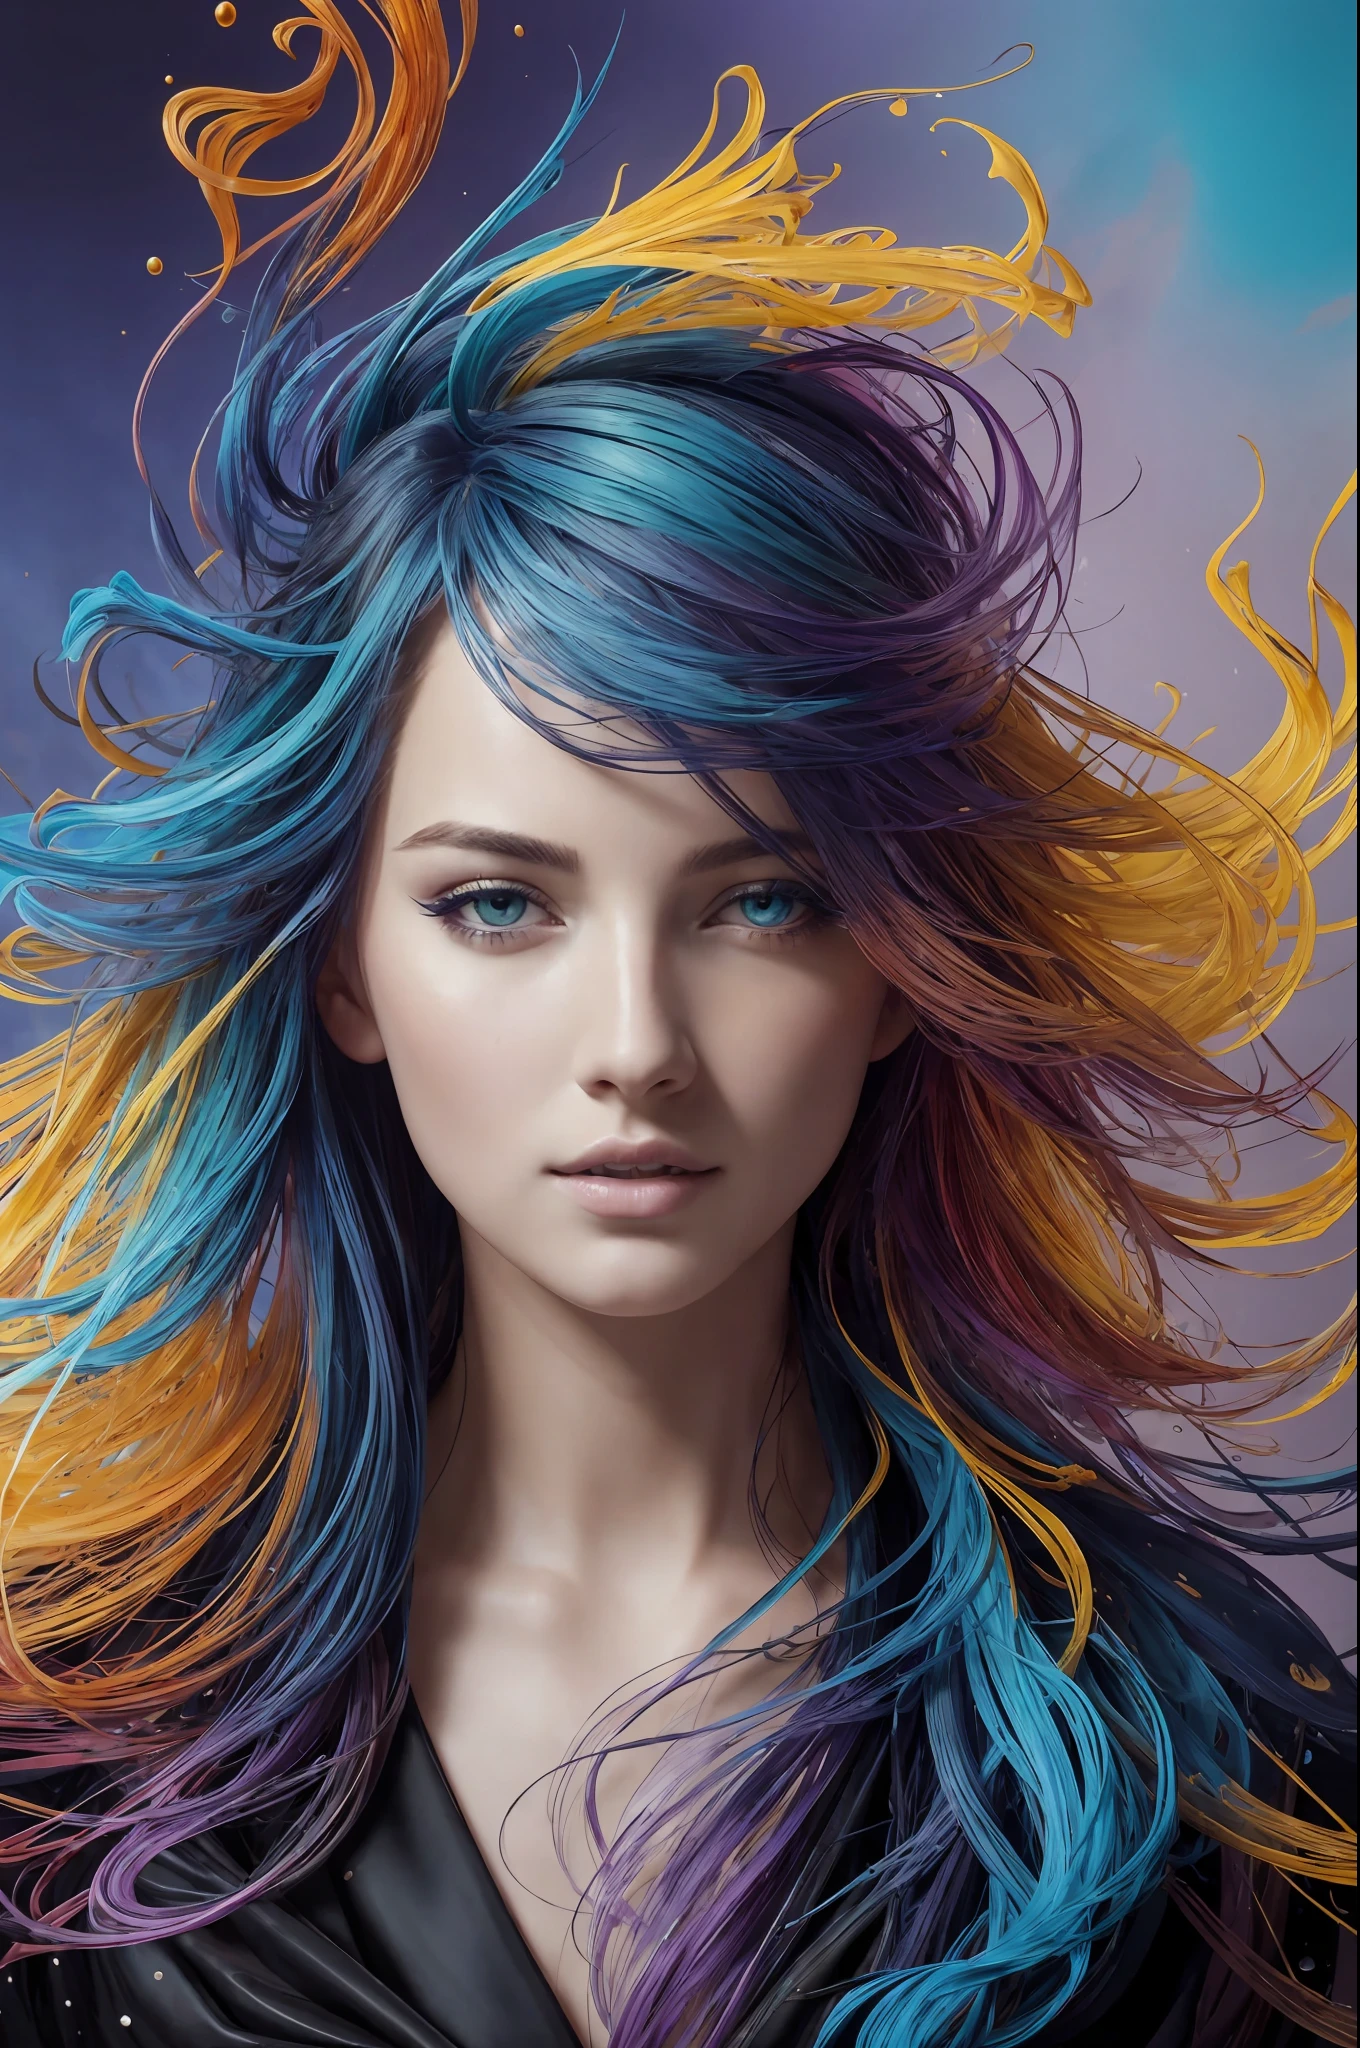 다채로운 아름다운 소녀: 기루 28세, 녹색 눈, 부스스한 머리, 오일 페인팅, 부드러운 피부를 가진 멋진 완벽한 얼굴 완벽한 얼굴, 파란색 노란색 색상, 연한 보라색과 보라색 추가, 밝은 빨간색 추가, 복잡한 디테일, 스플래시 화면, 8K resolution, 걸작, 귀여운 얼굴,artstation 디지털 페인팅 부드러운 매우블랙 잉크 흐름: 8K resolution photo현실적인 걸작: 복잡하고 세밀한 유체 구아슈 그림: 존 침례교 몽그(John Baptist Mongue): 달필: 아크릴: 수채화 미술, 전문 사진, 자연 채광, 체적 조명 맥시멀리스트 사진 일러스트레이션: 마튼 밥저트(Marton Bobzert):, 복잡한, 우아한, 널찍한, 환상적이다,  구불 거리는 머리카락, 떠는, 최고의 품질 세부 사항, 현실적인, 고화질, 고품질 질감, 서사시적인 조명, 영화 필름 스틸, 8K, 부드러운 조명, 애니메이션 스타일, 훌륭한 카드 놀이 테두리, 무작위 다채로운 예술, 오일 페인팅, 파란색 노란색 색상, 연한 보라색과 보라색 추가, 밝은 빨간색 추가, 복잡한 디테일, 스플래시 화면, 8K resolution, 걸작, artstation 디지털 페인팅 부드러운 매우블랙 잉크 흐름: 8K resolution photo현실적인 걸작: 복잡하고 세밀한 유체 구아슈 그림: 존 침례교 몽그(John Baptist Mongue): 달필: 아크릴: 수채화 미술, 전문 사진, 자연 채광, 체적 조명 맥시멀리스트 사진 일러스트레이션: 마튼 밥저트(Marton Bobzert):, 복잡한, 우아한, 널찍한, 환상적이다, 떠는